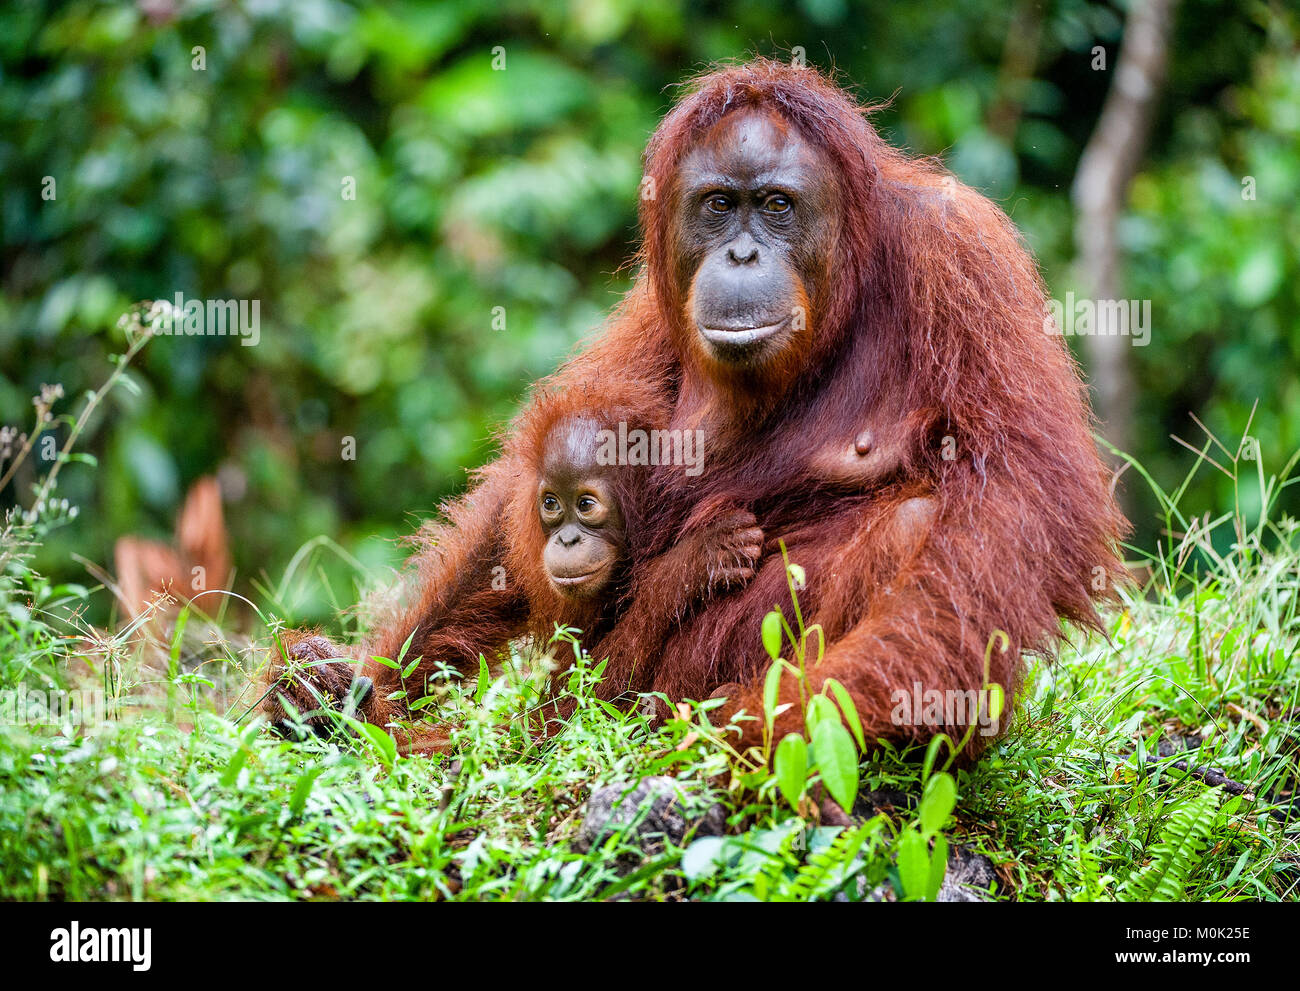 Ein Weibchen der Orang-utan mit einem Cub in einem natürlichen Lebensraum. Bornesischen Orang-utan (Pongo pygmaeus) in der wilden Natur. Regenwald der Insel Borneo. Indonesien Stockfoto